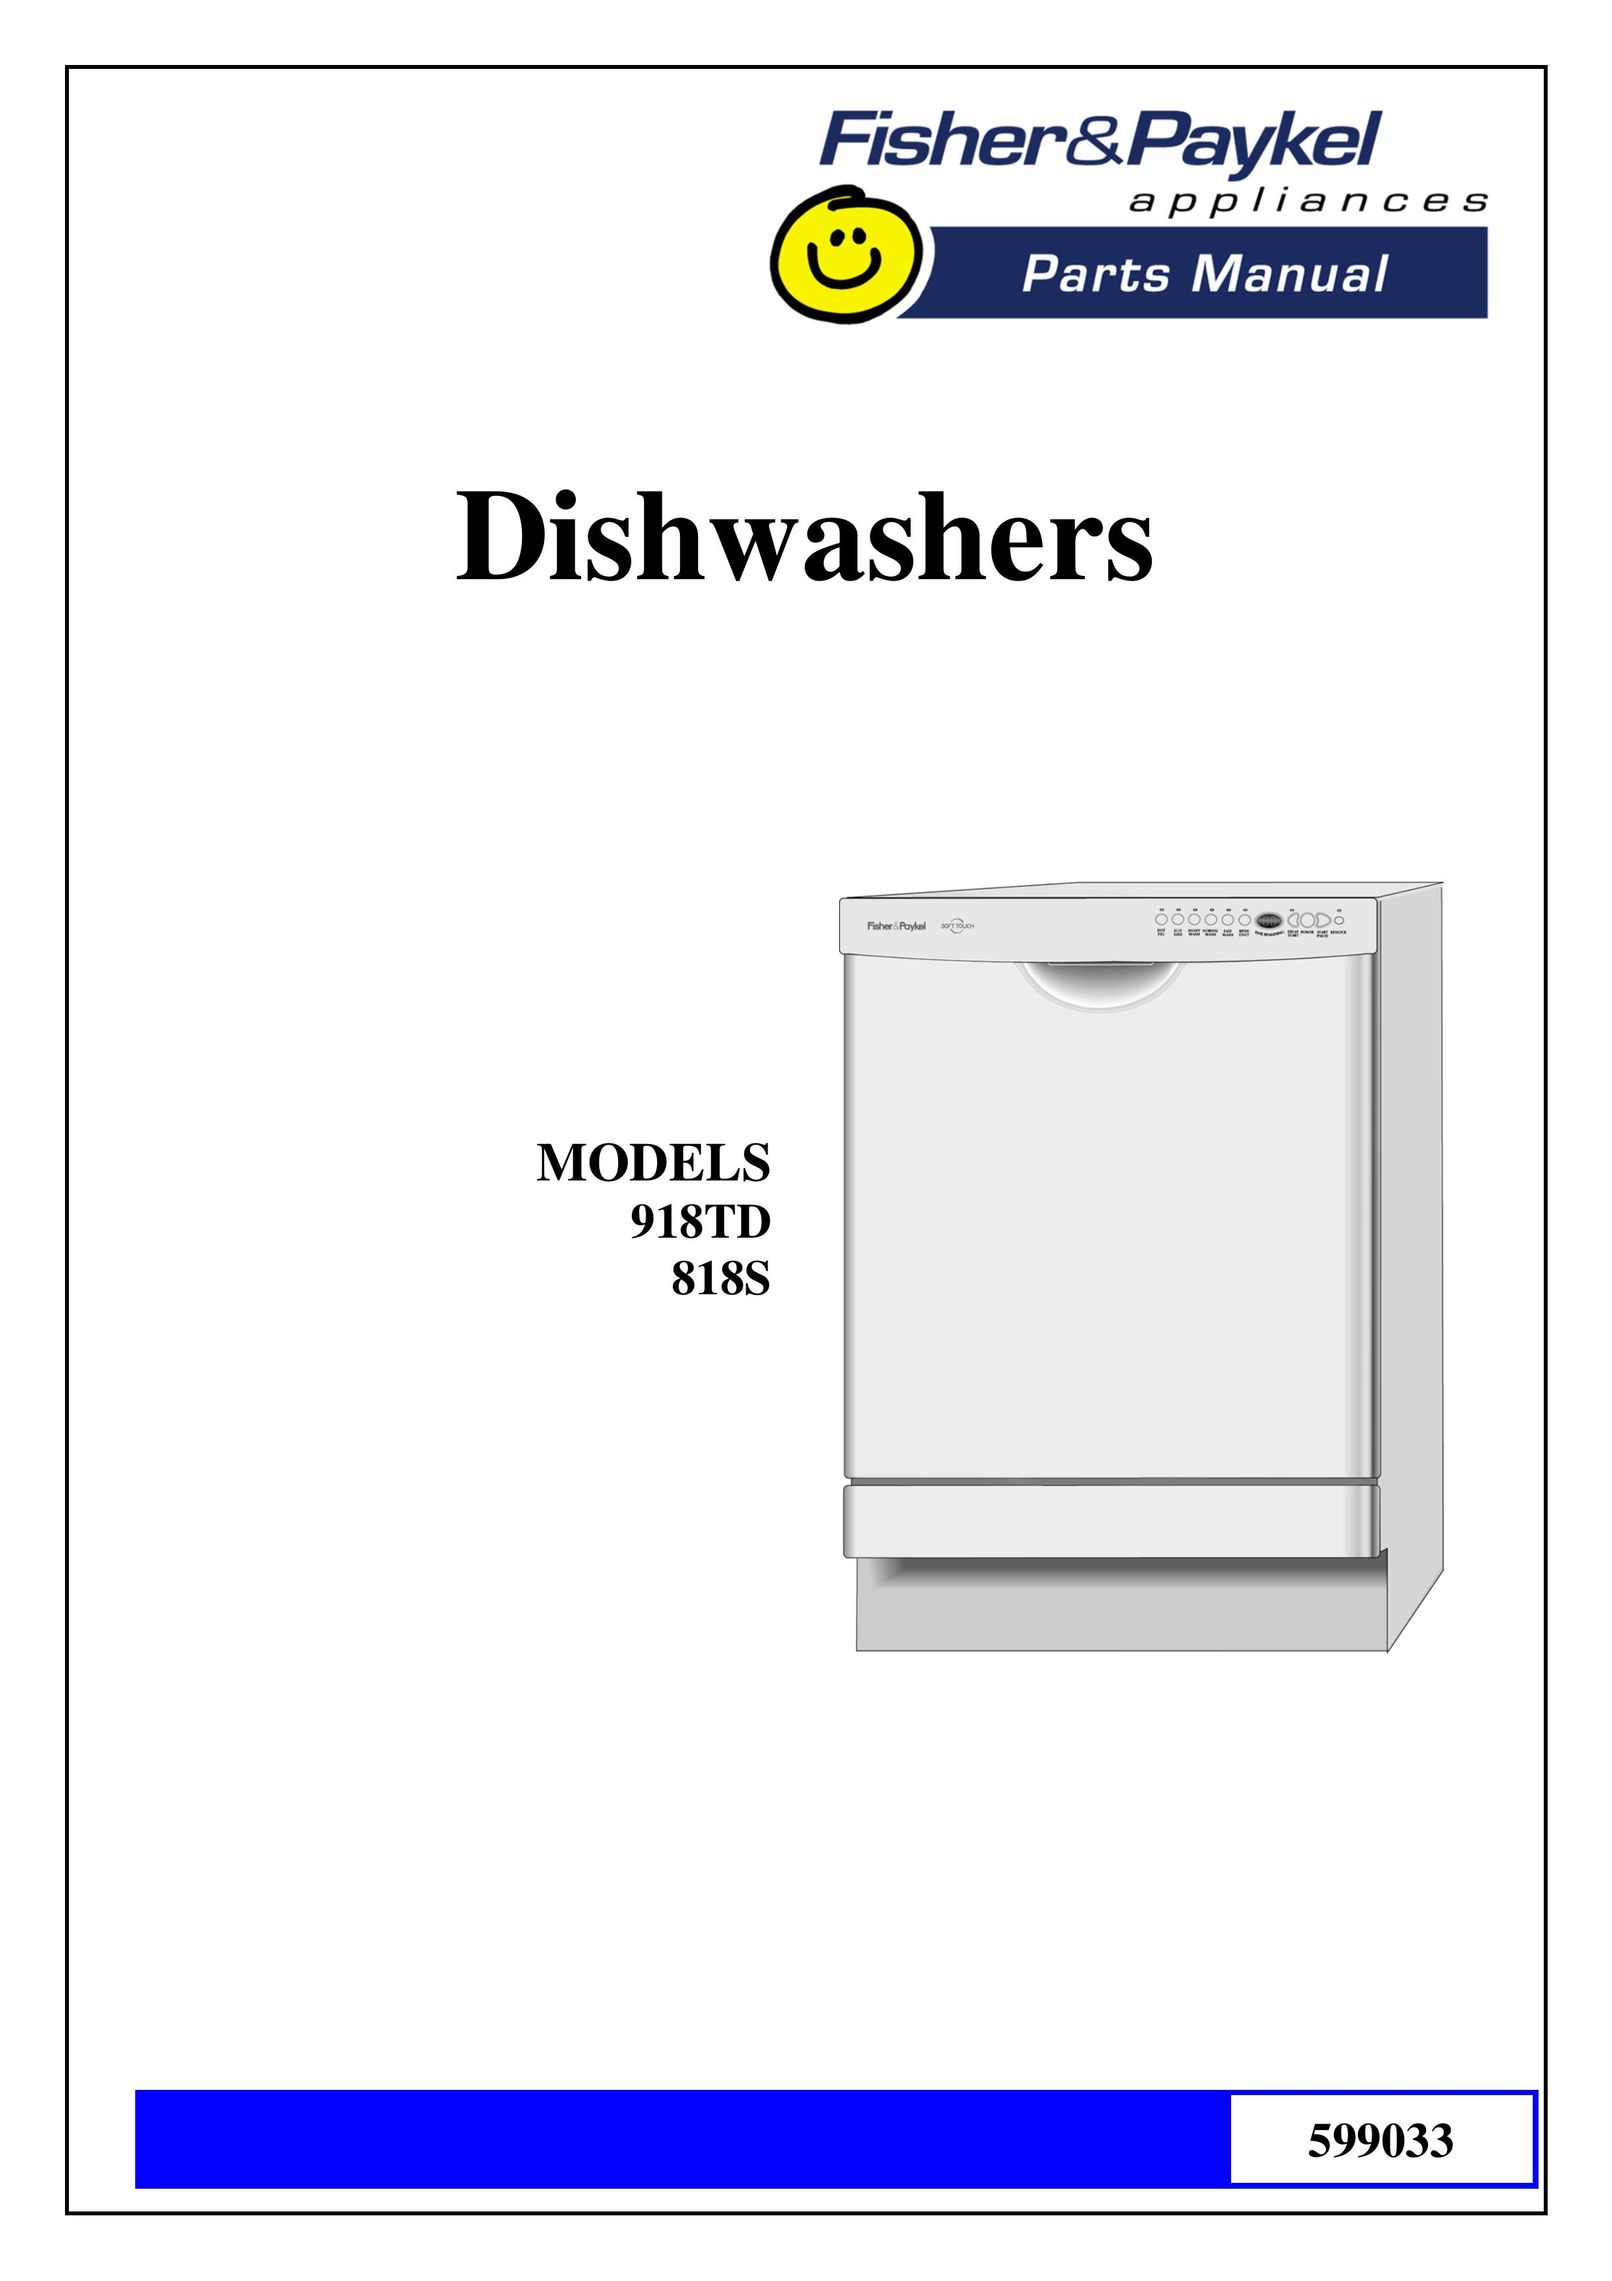 Fisher & Paykel 918TD Dishwasher User Manual